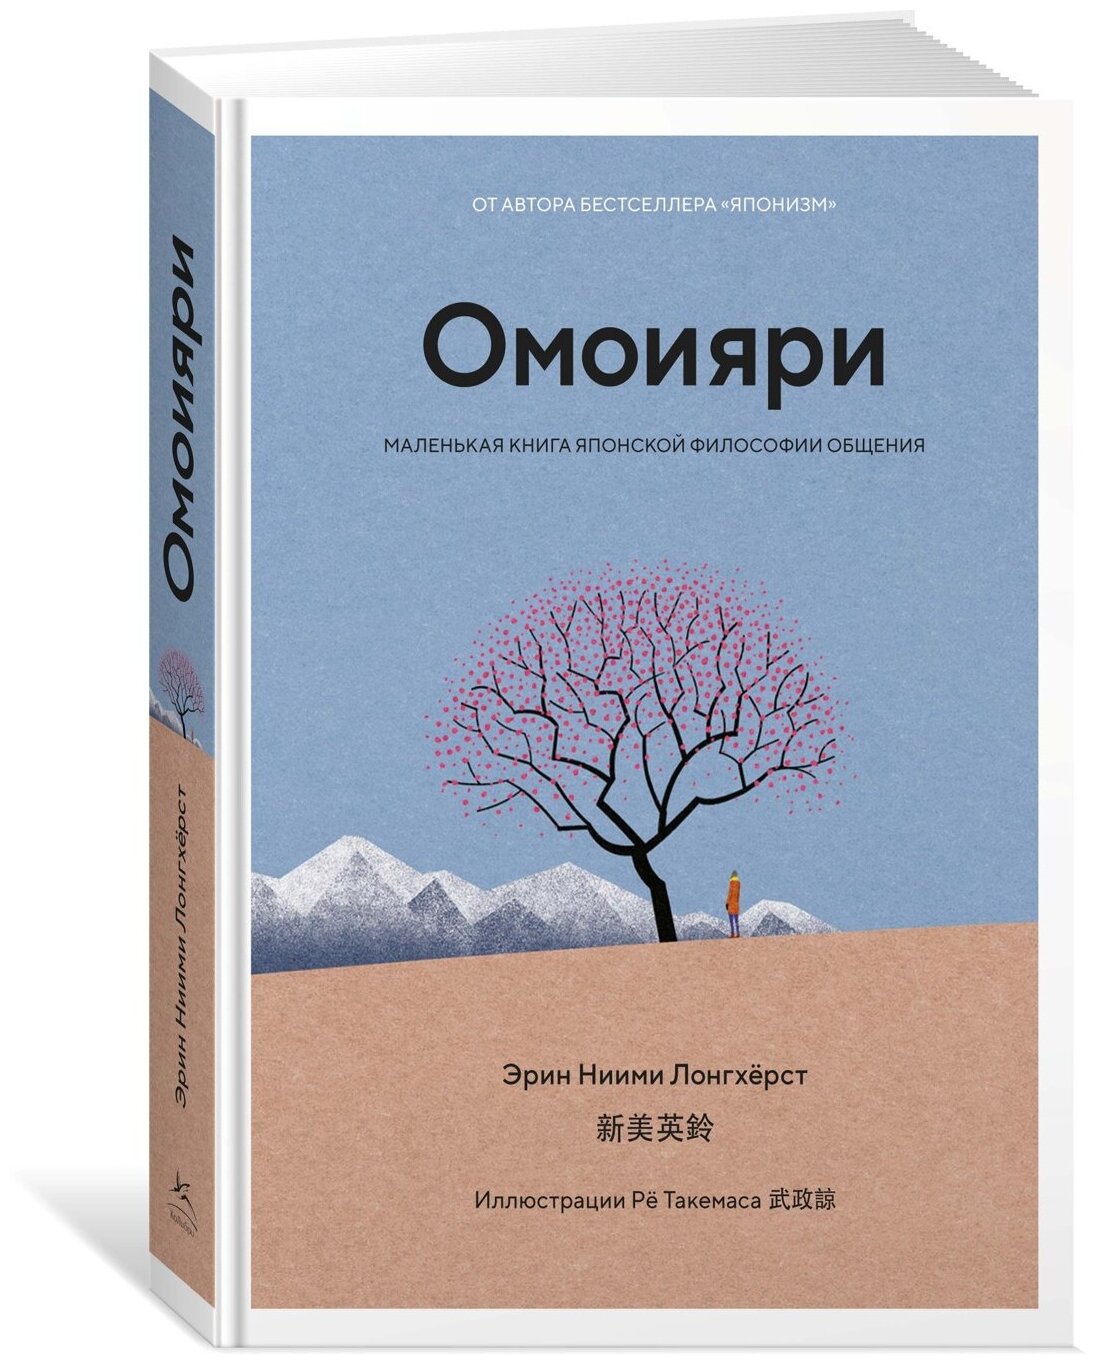 Омоияри Маленькая книга японской философии общения - фото №18